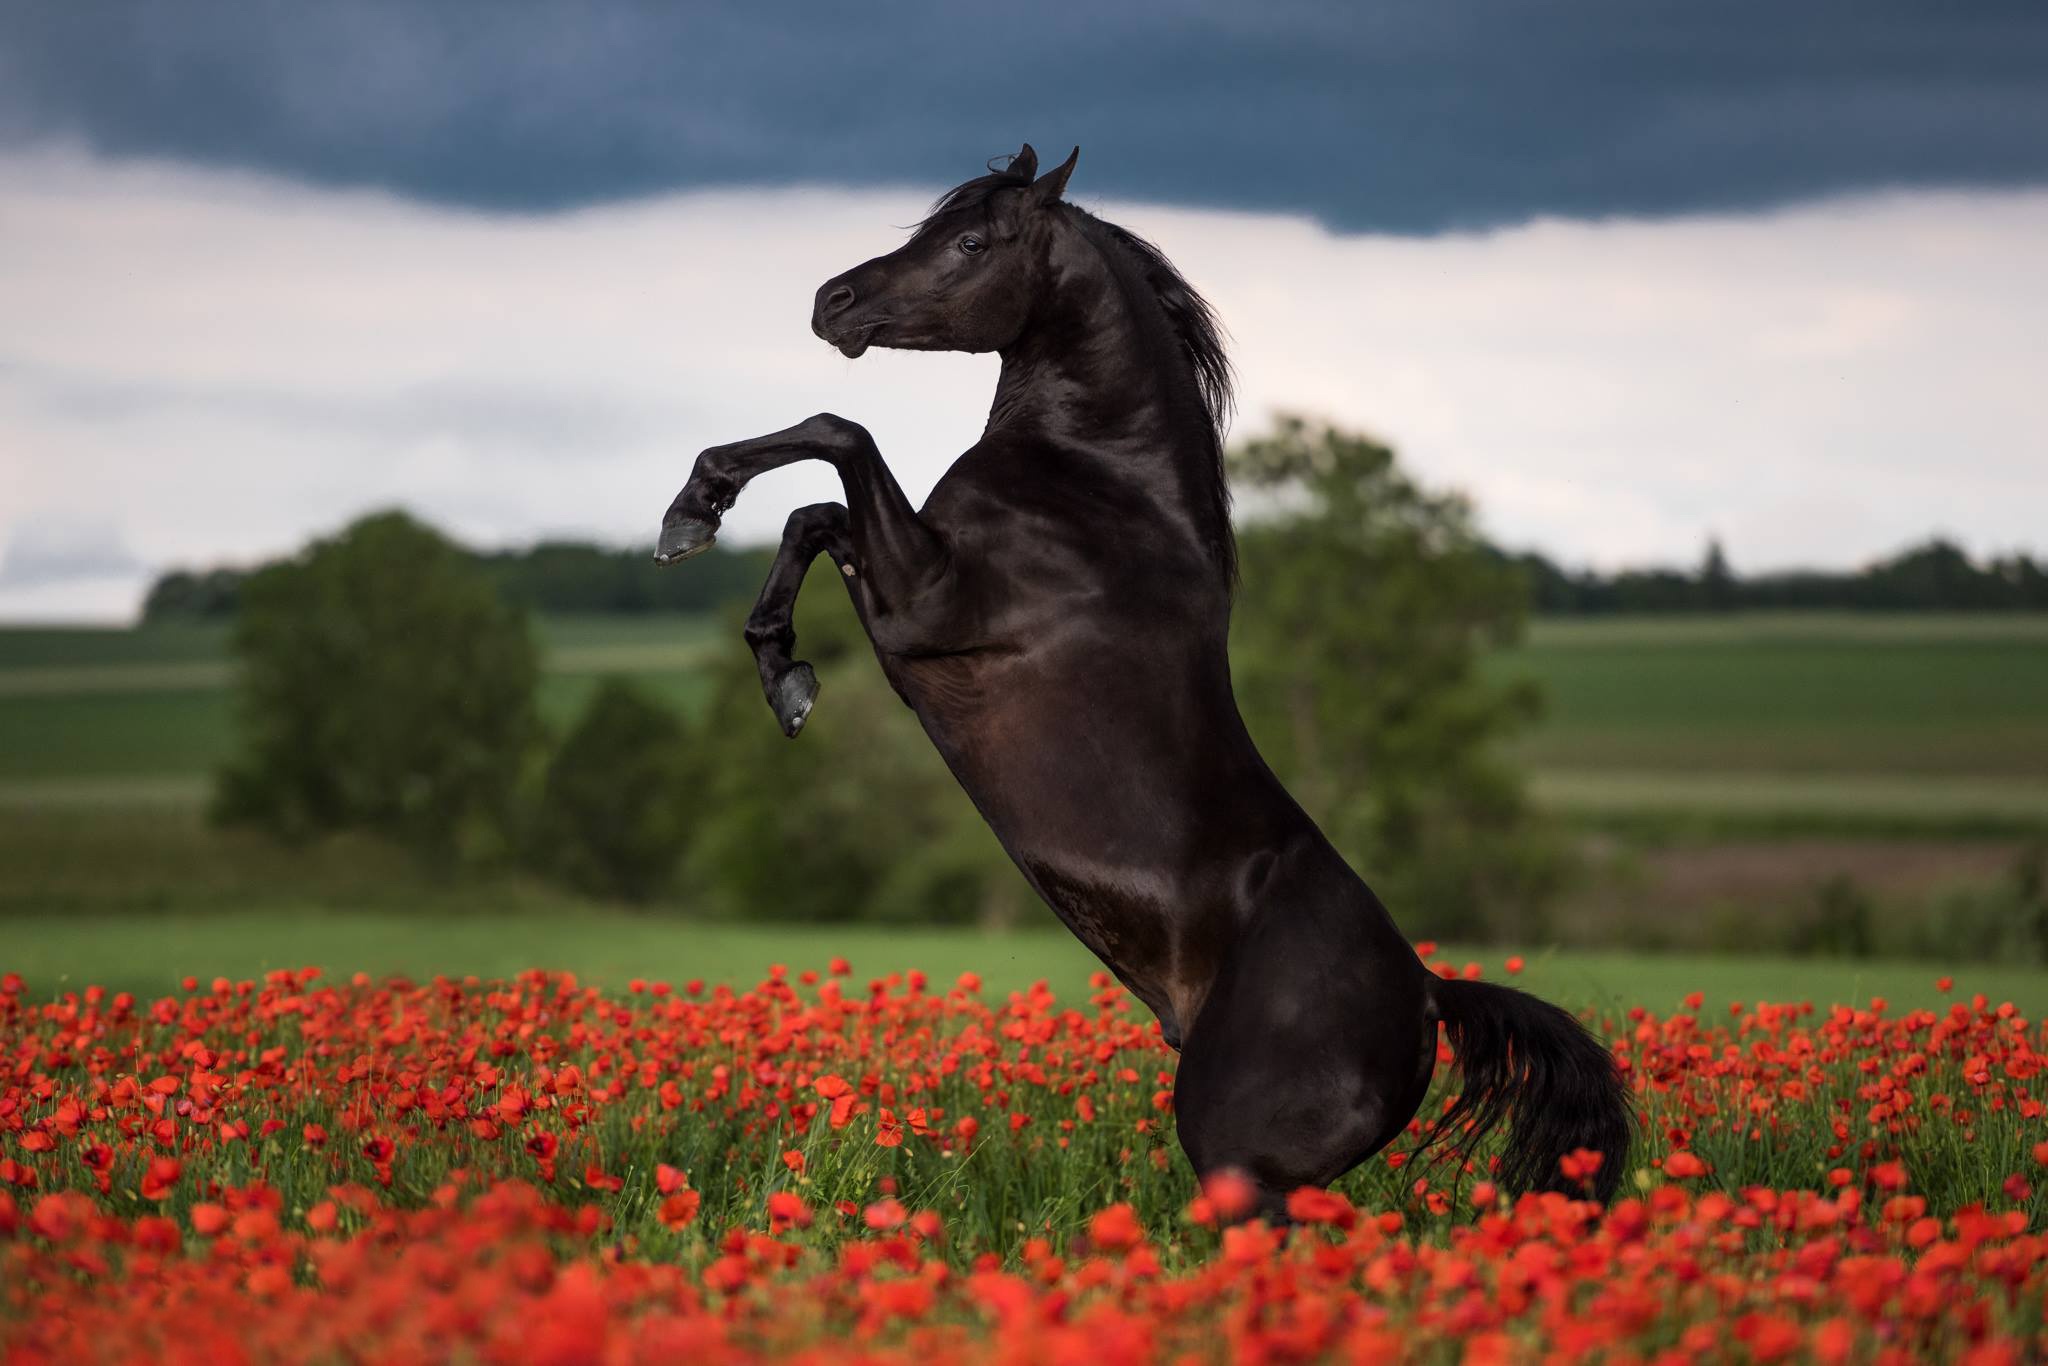 Фото лошадей красивых в хорошем качестве